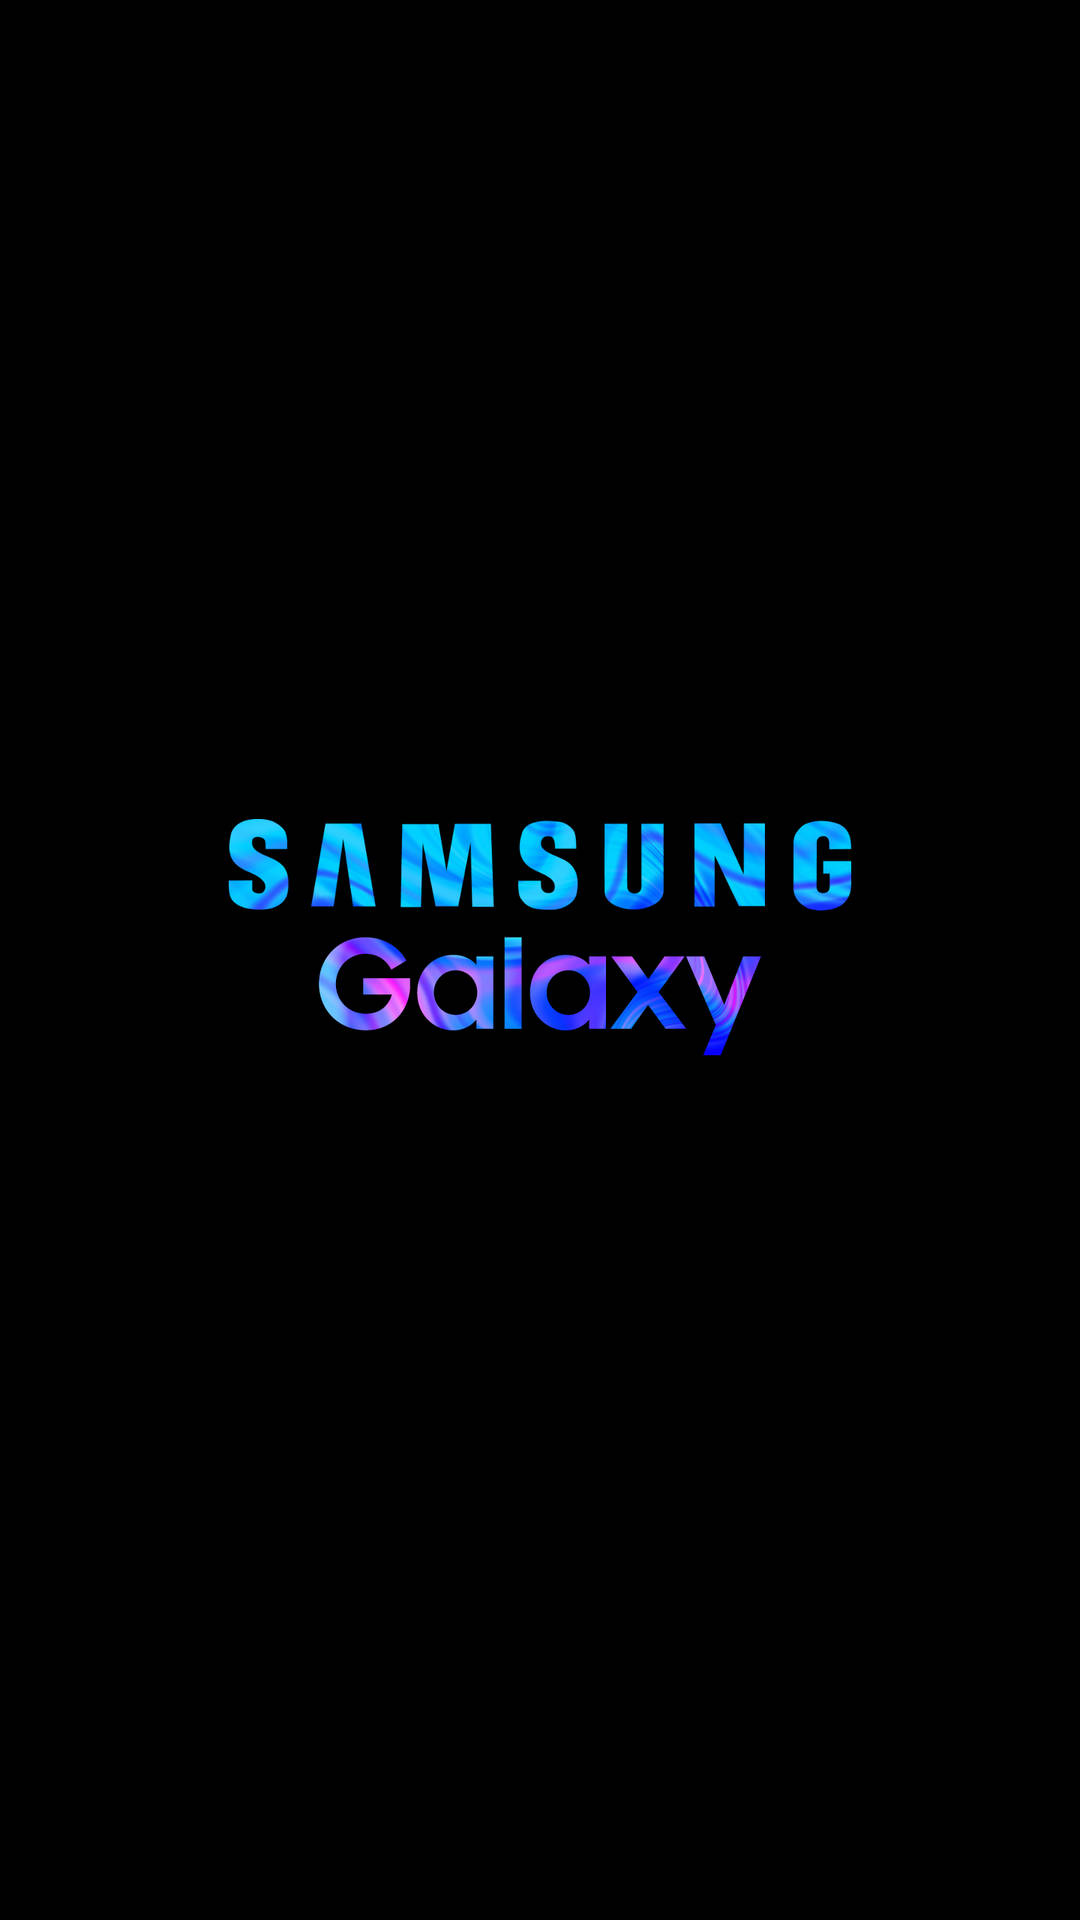 Samsung Mobile Galaxy-logo Wallpaper